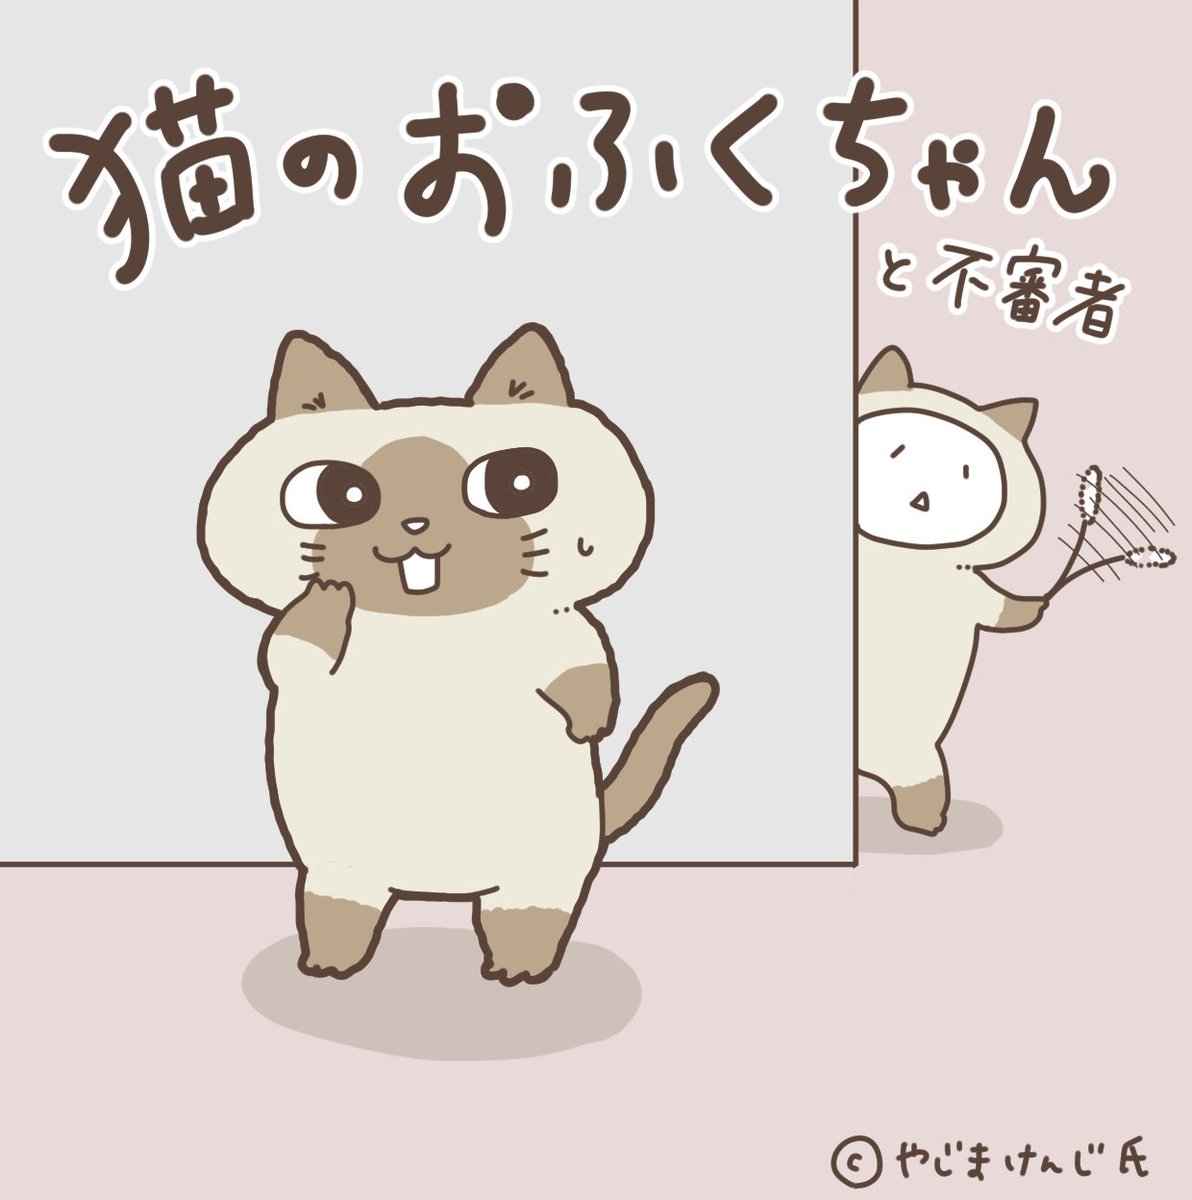 やじまさん@yajima_kenji とこのおふくちゃんが単行本発売とのことで、おふくちゃんを描いてみました!

 #おふくちゃんを描いてみた
 #猫のおふくちゃん 